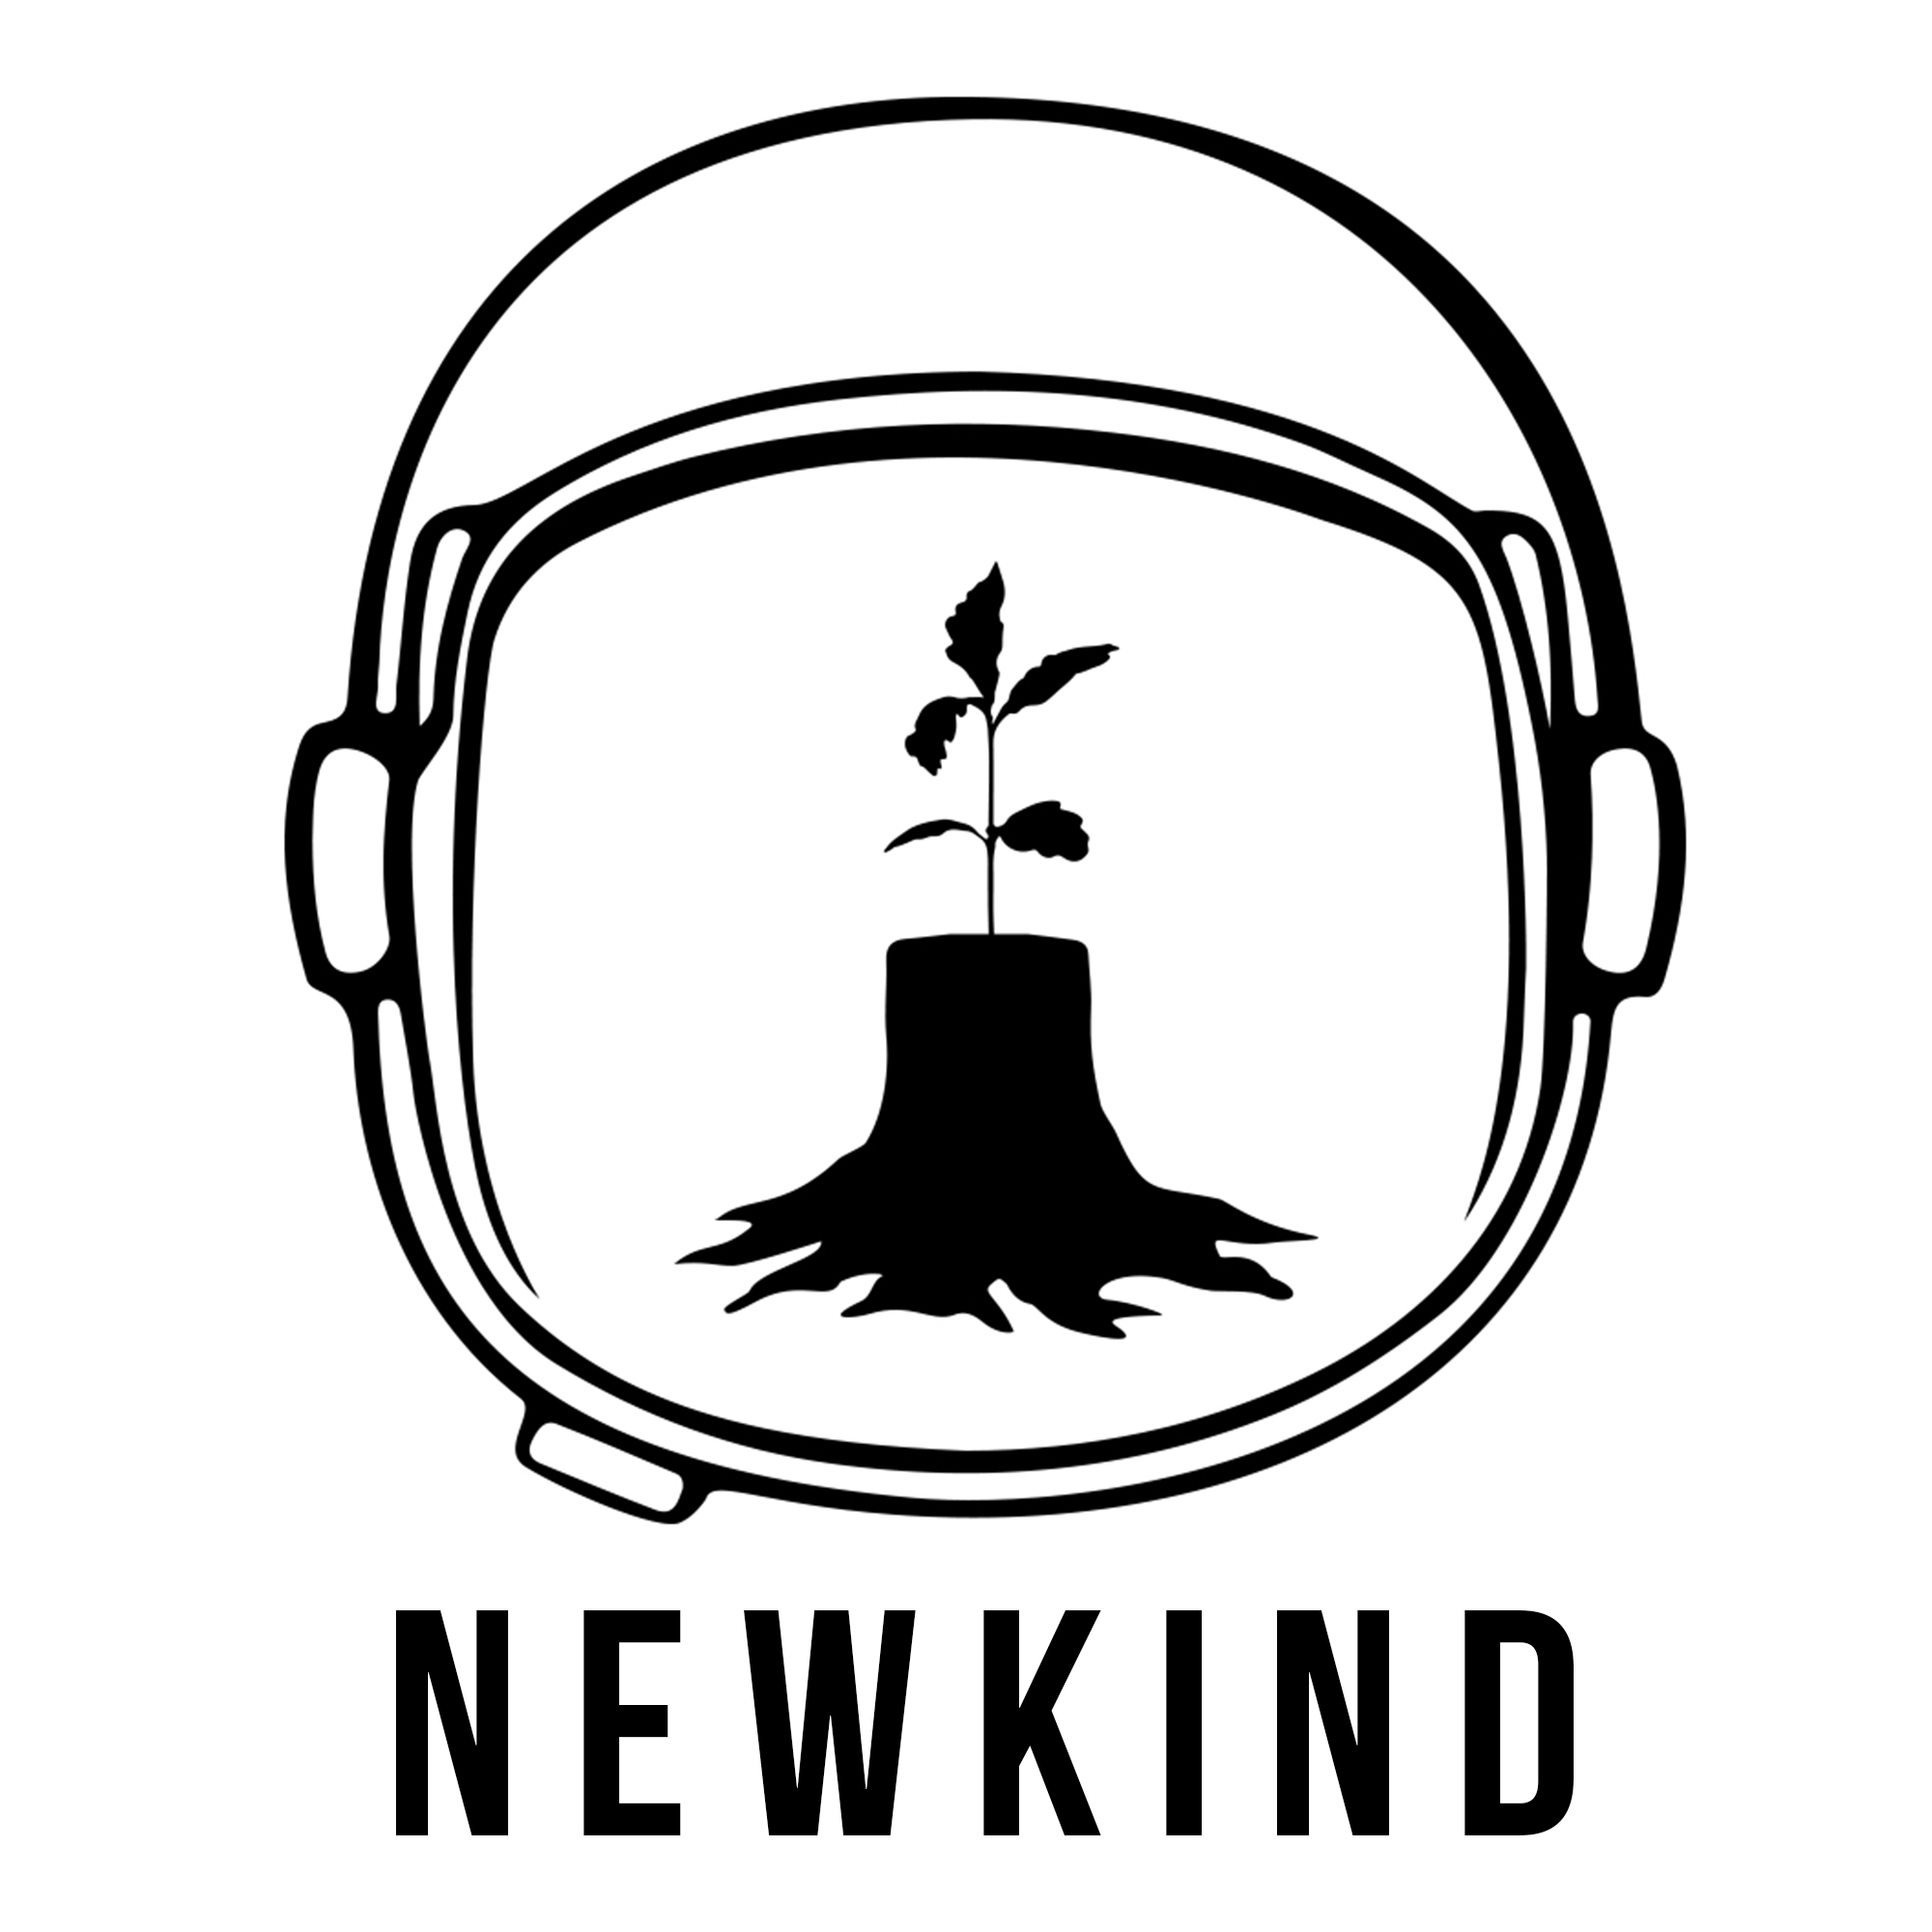 Newkind logo